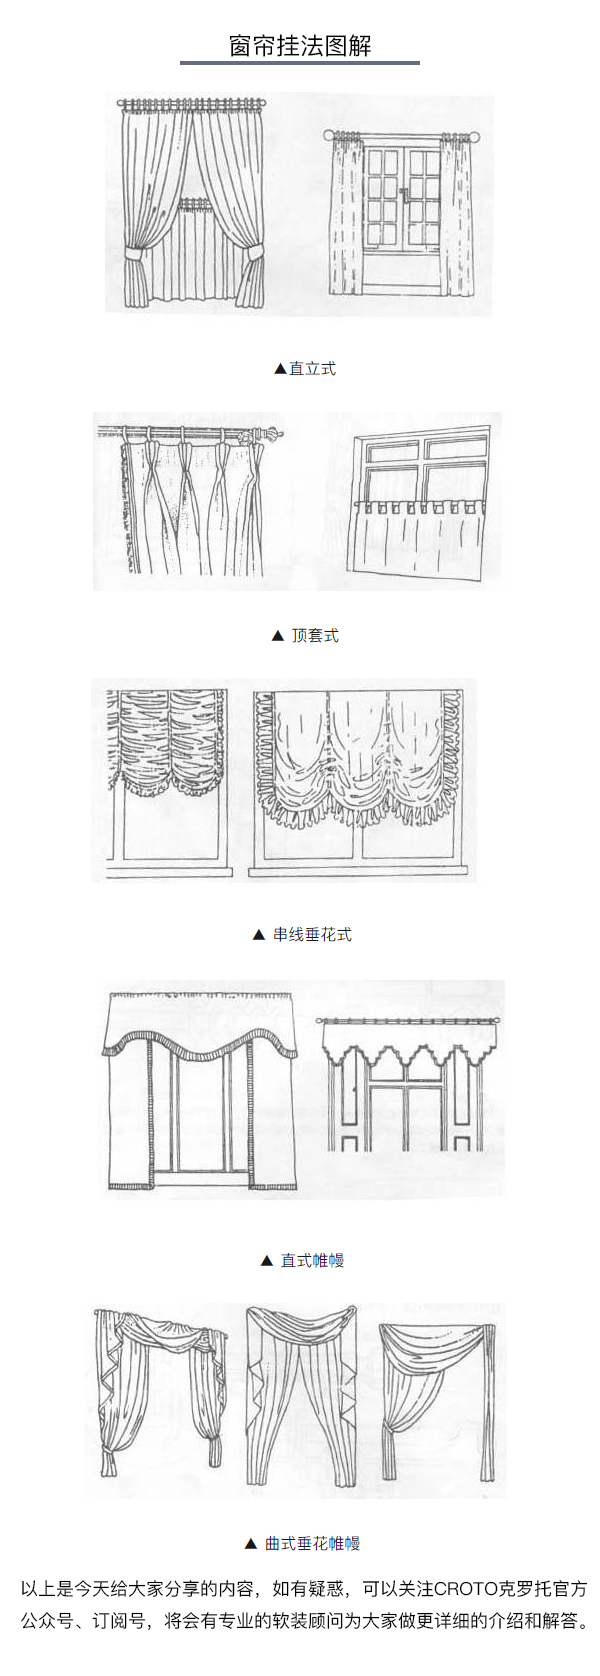 关于窗帘的用料尺寸安装挂法